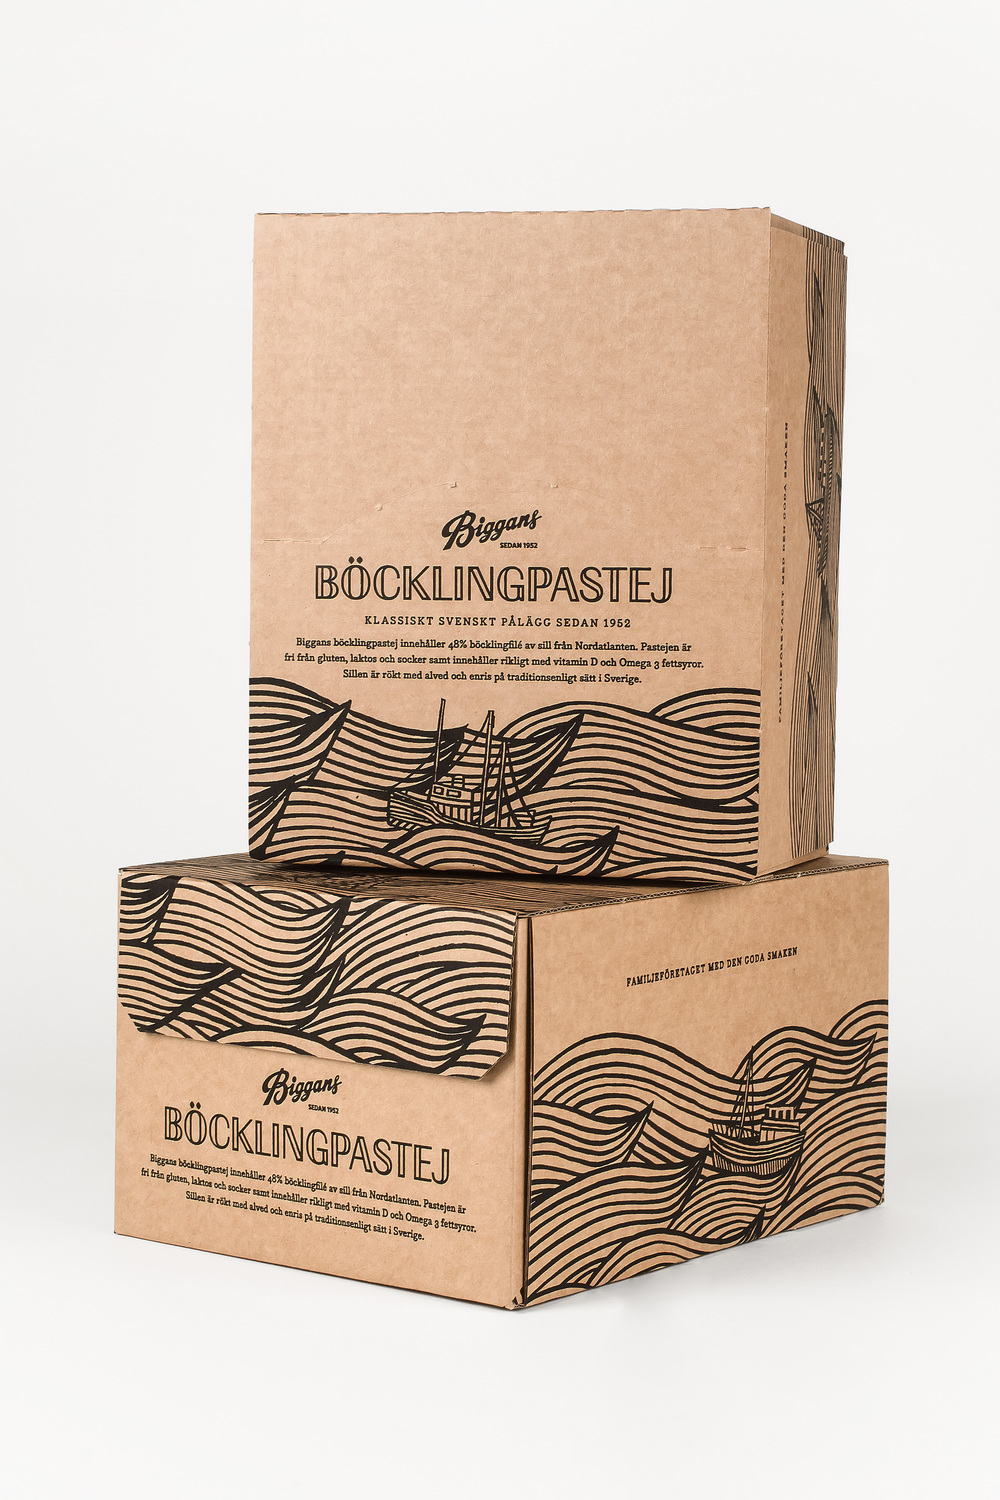 Bedow_packaging_biggans_bocklingpastej-11.jpg